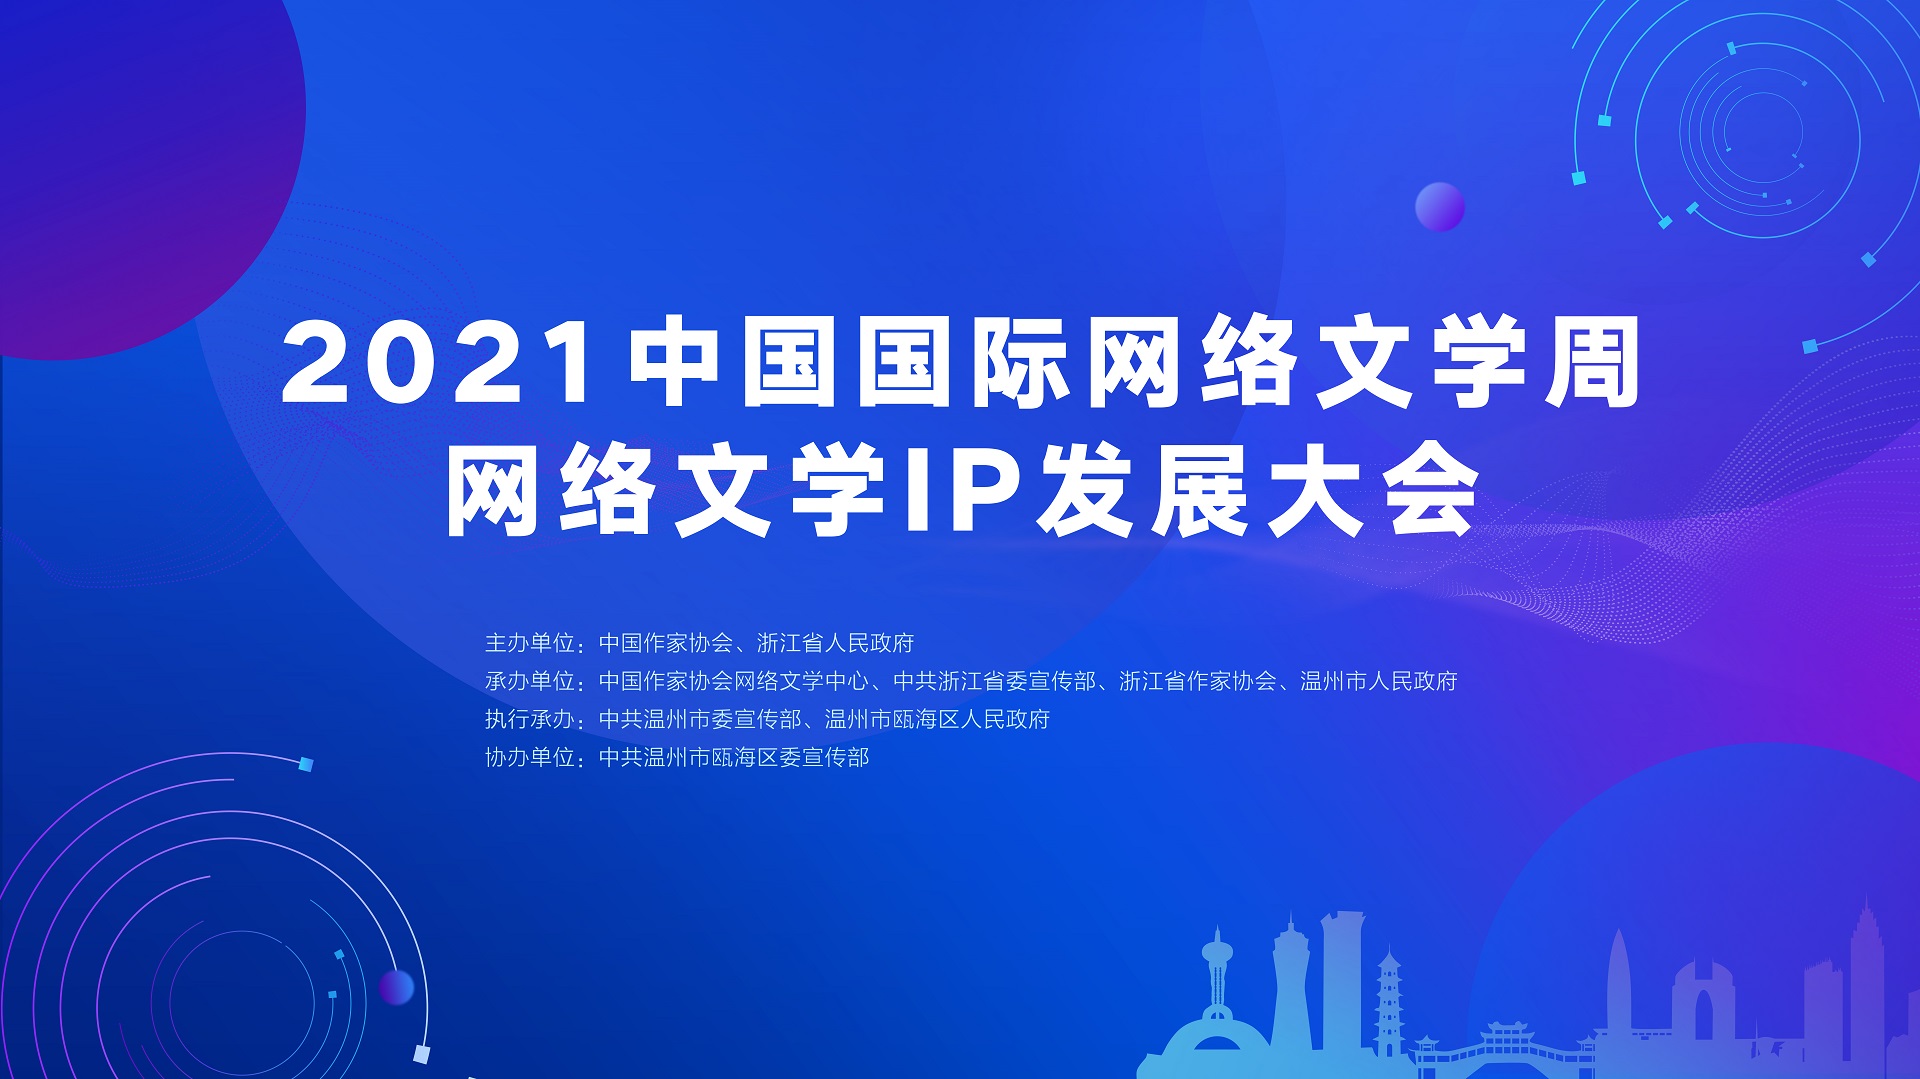 直播:中国国际网络文学周·网络文学IP发展大会